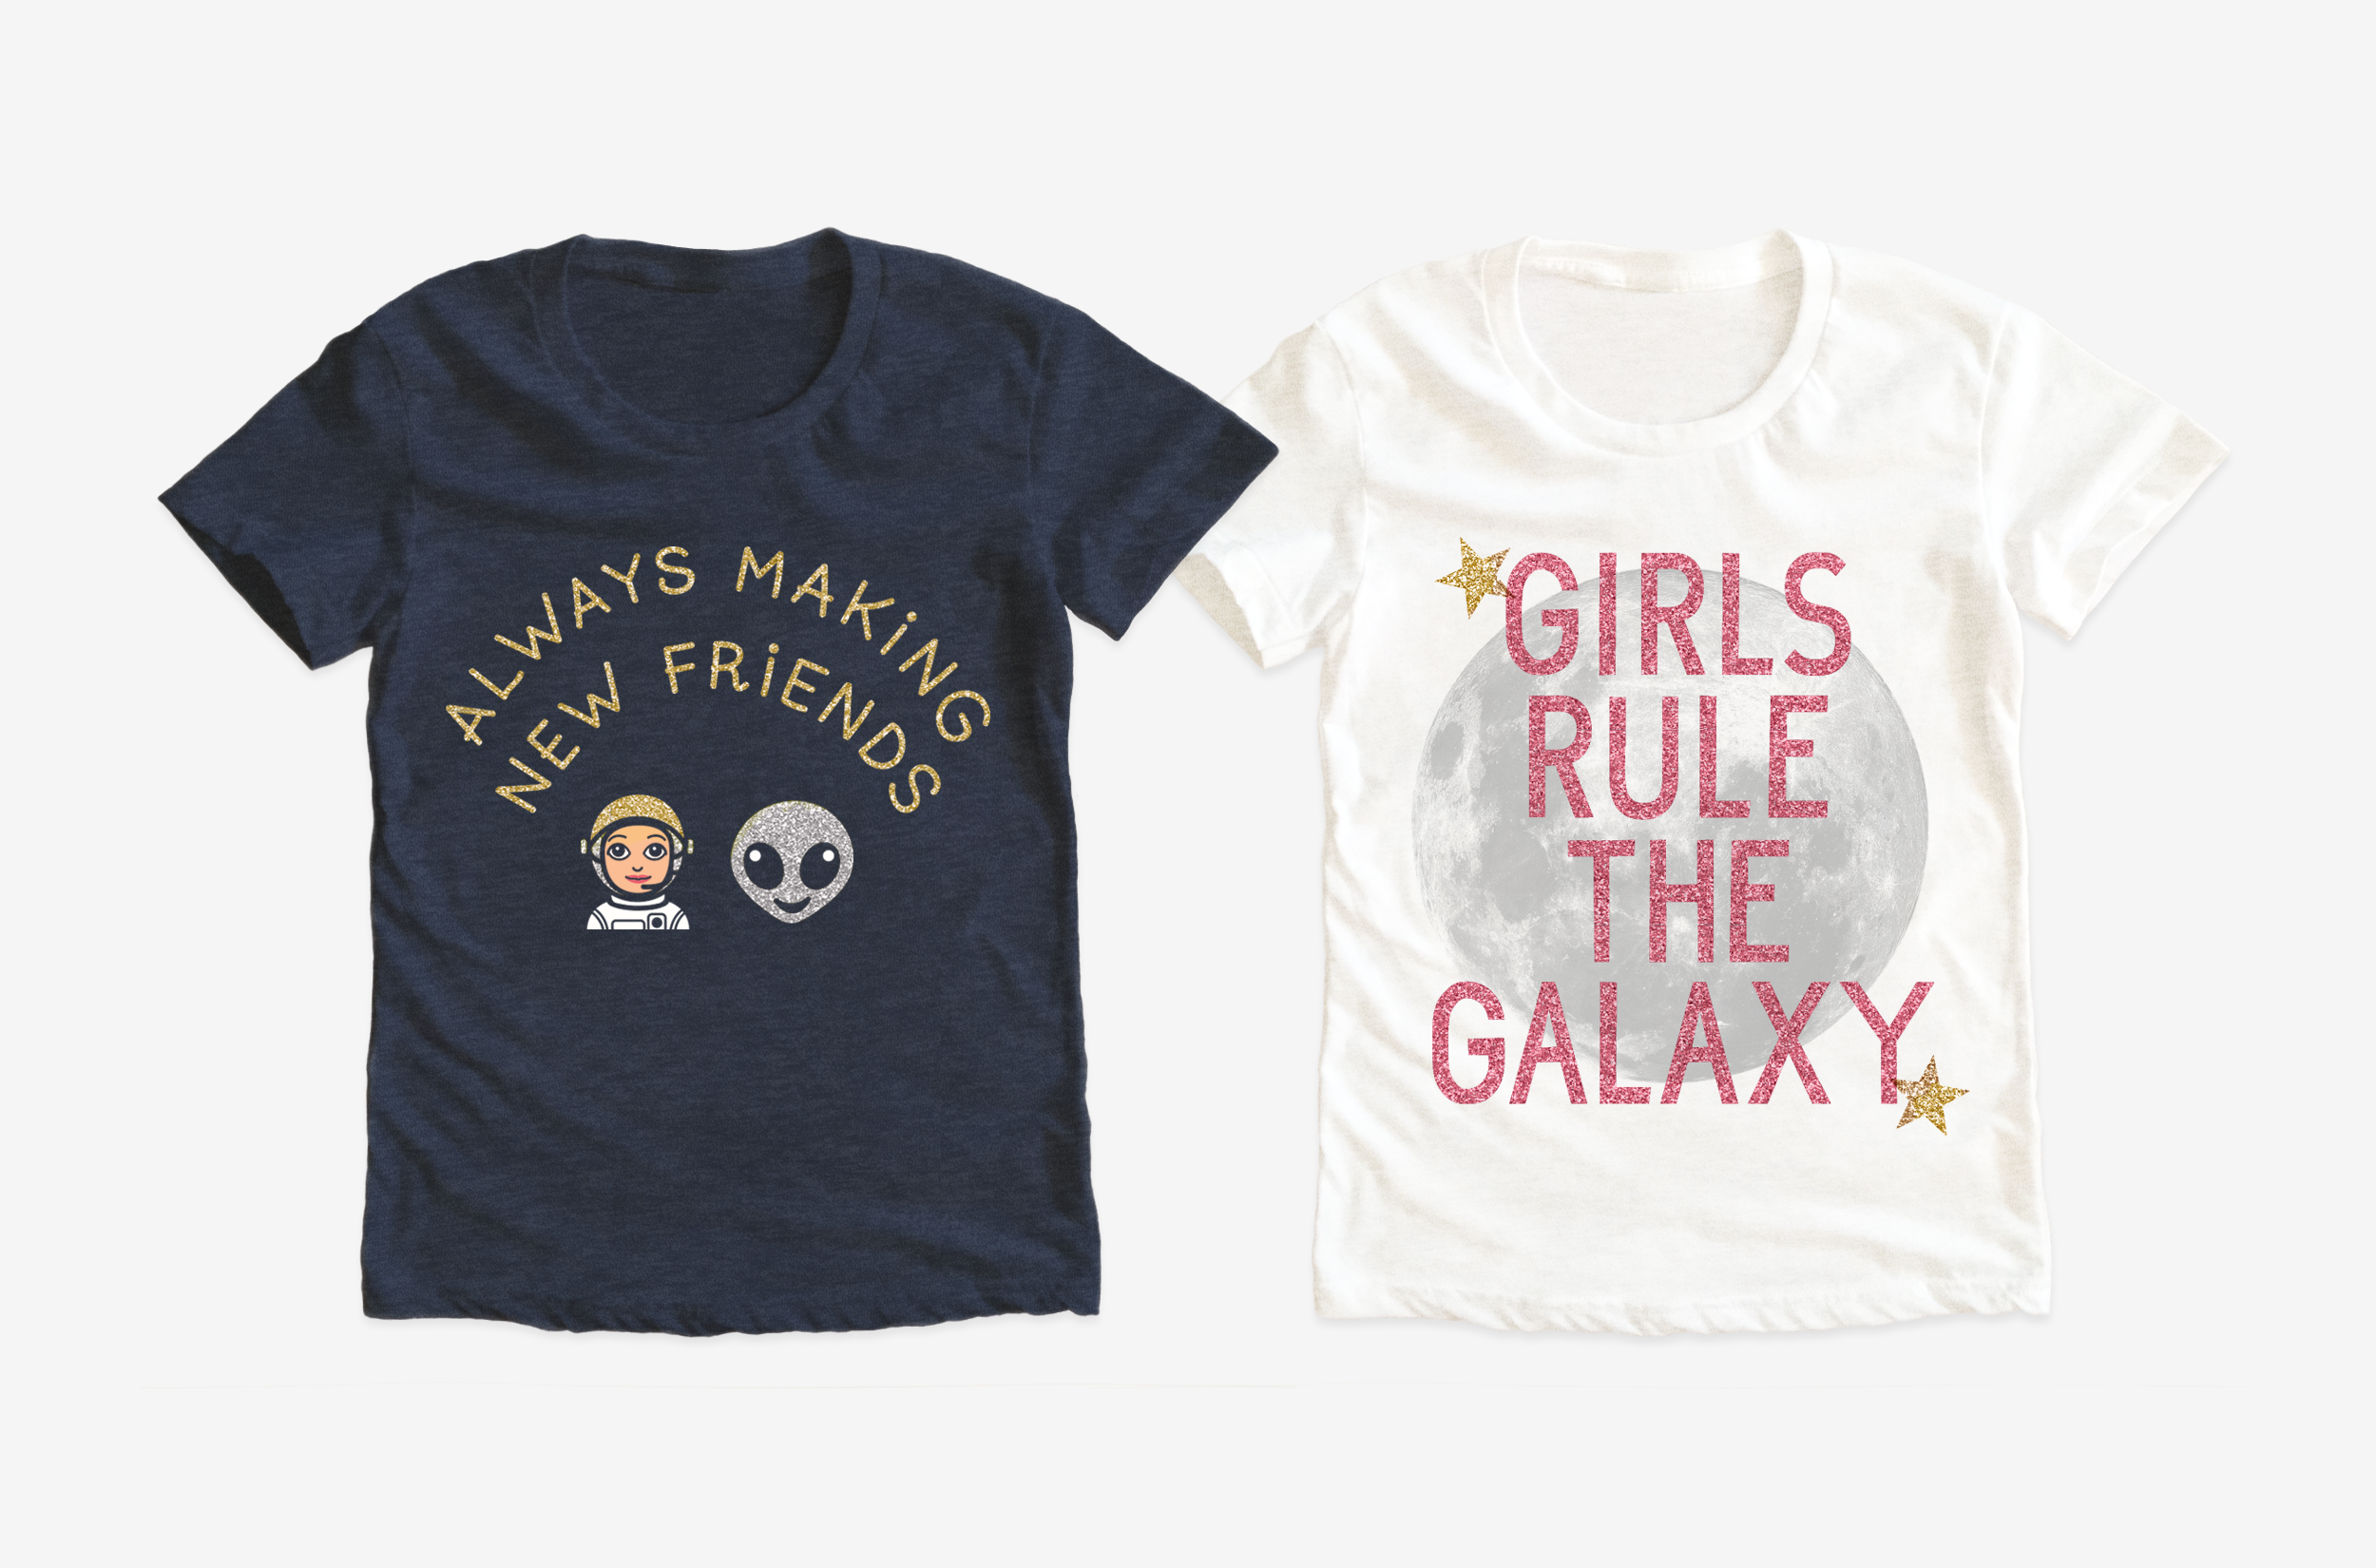  OSHKOSH B'GOSH / Girls t-shirt graphics 